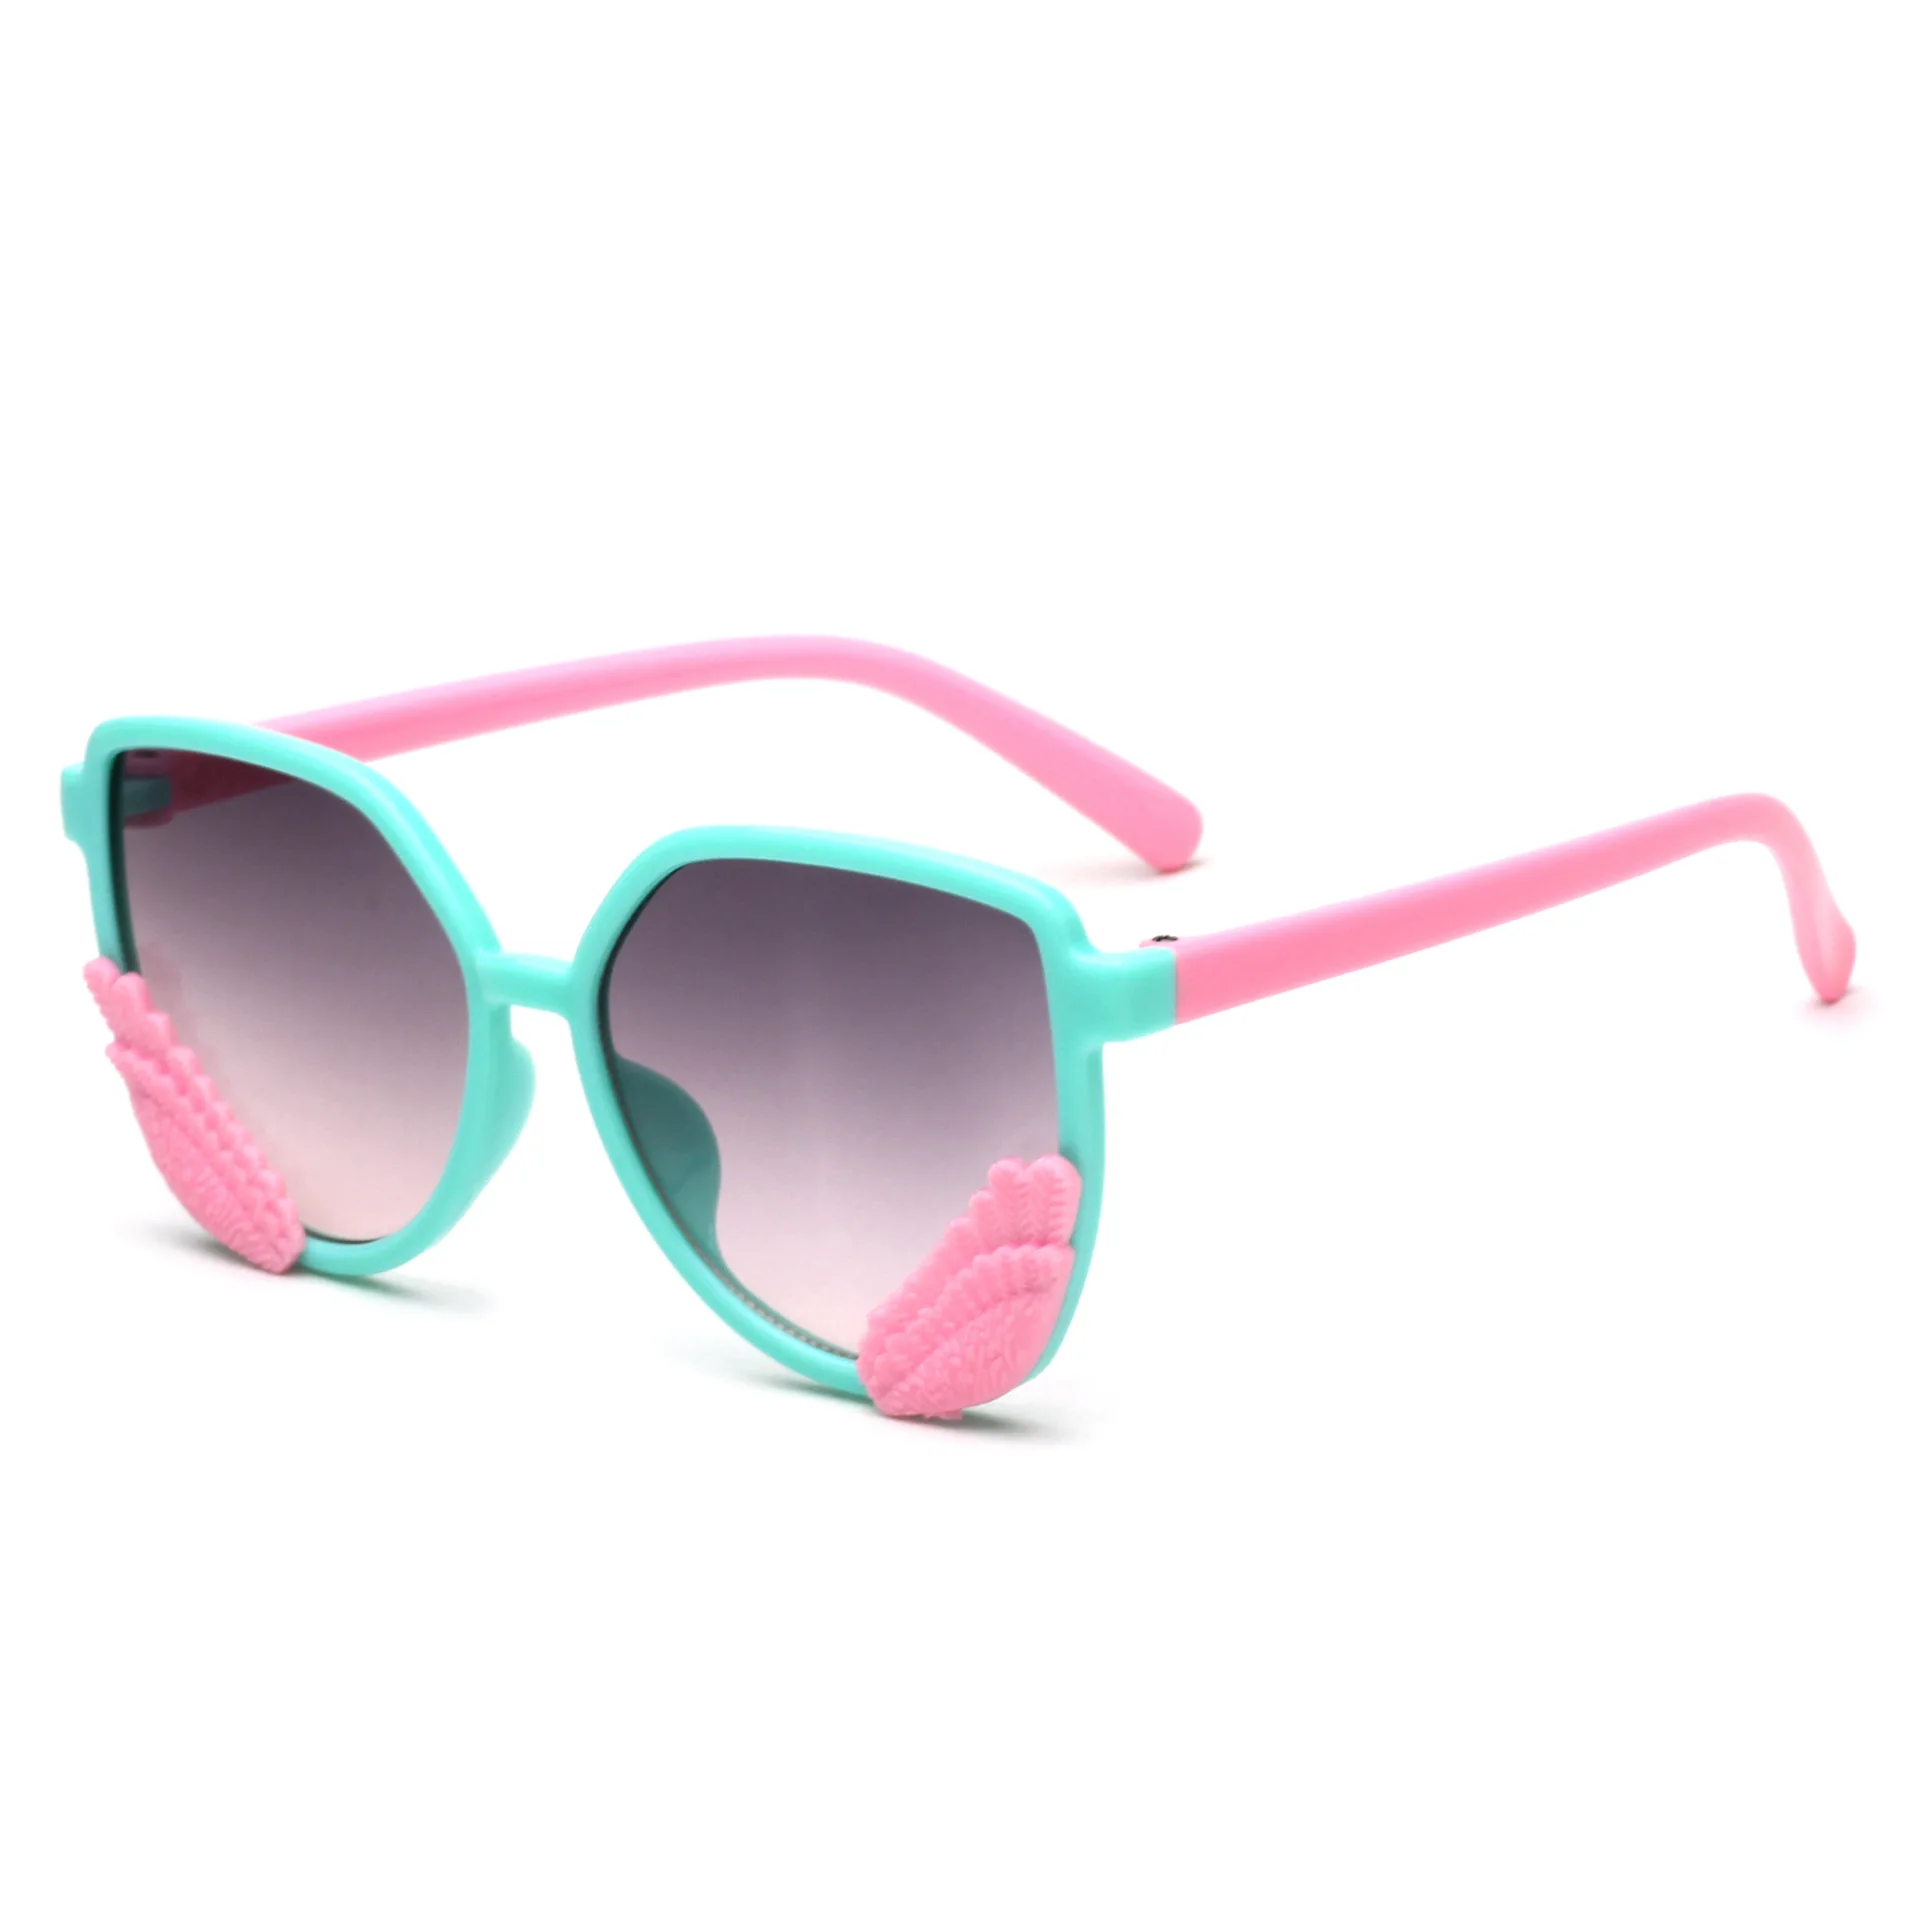 Корейская версия детских солнцезащитных очков новые невидимые солнечные очки с крыльями для мальчиков и девочек, Подиумные блестящие сценические солнцезащитные очки